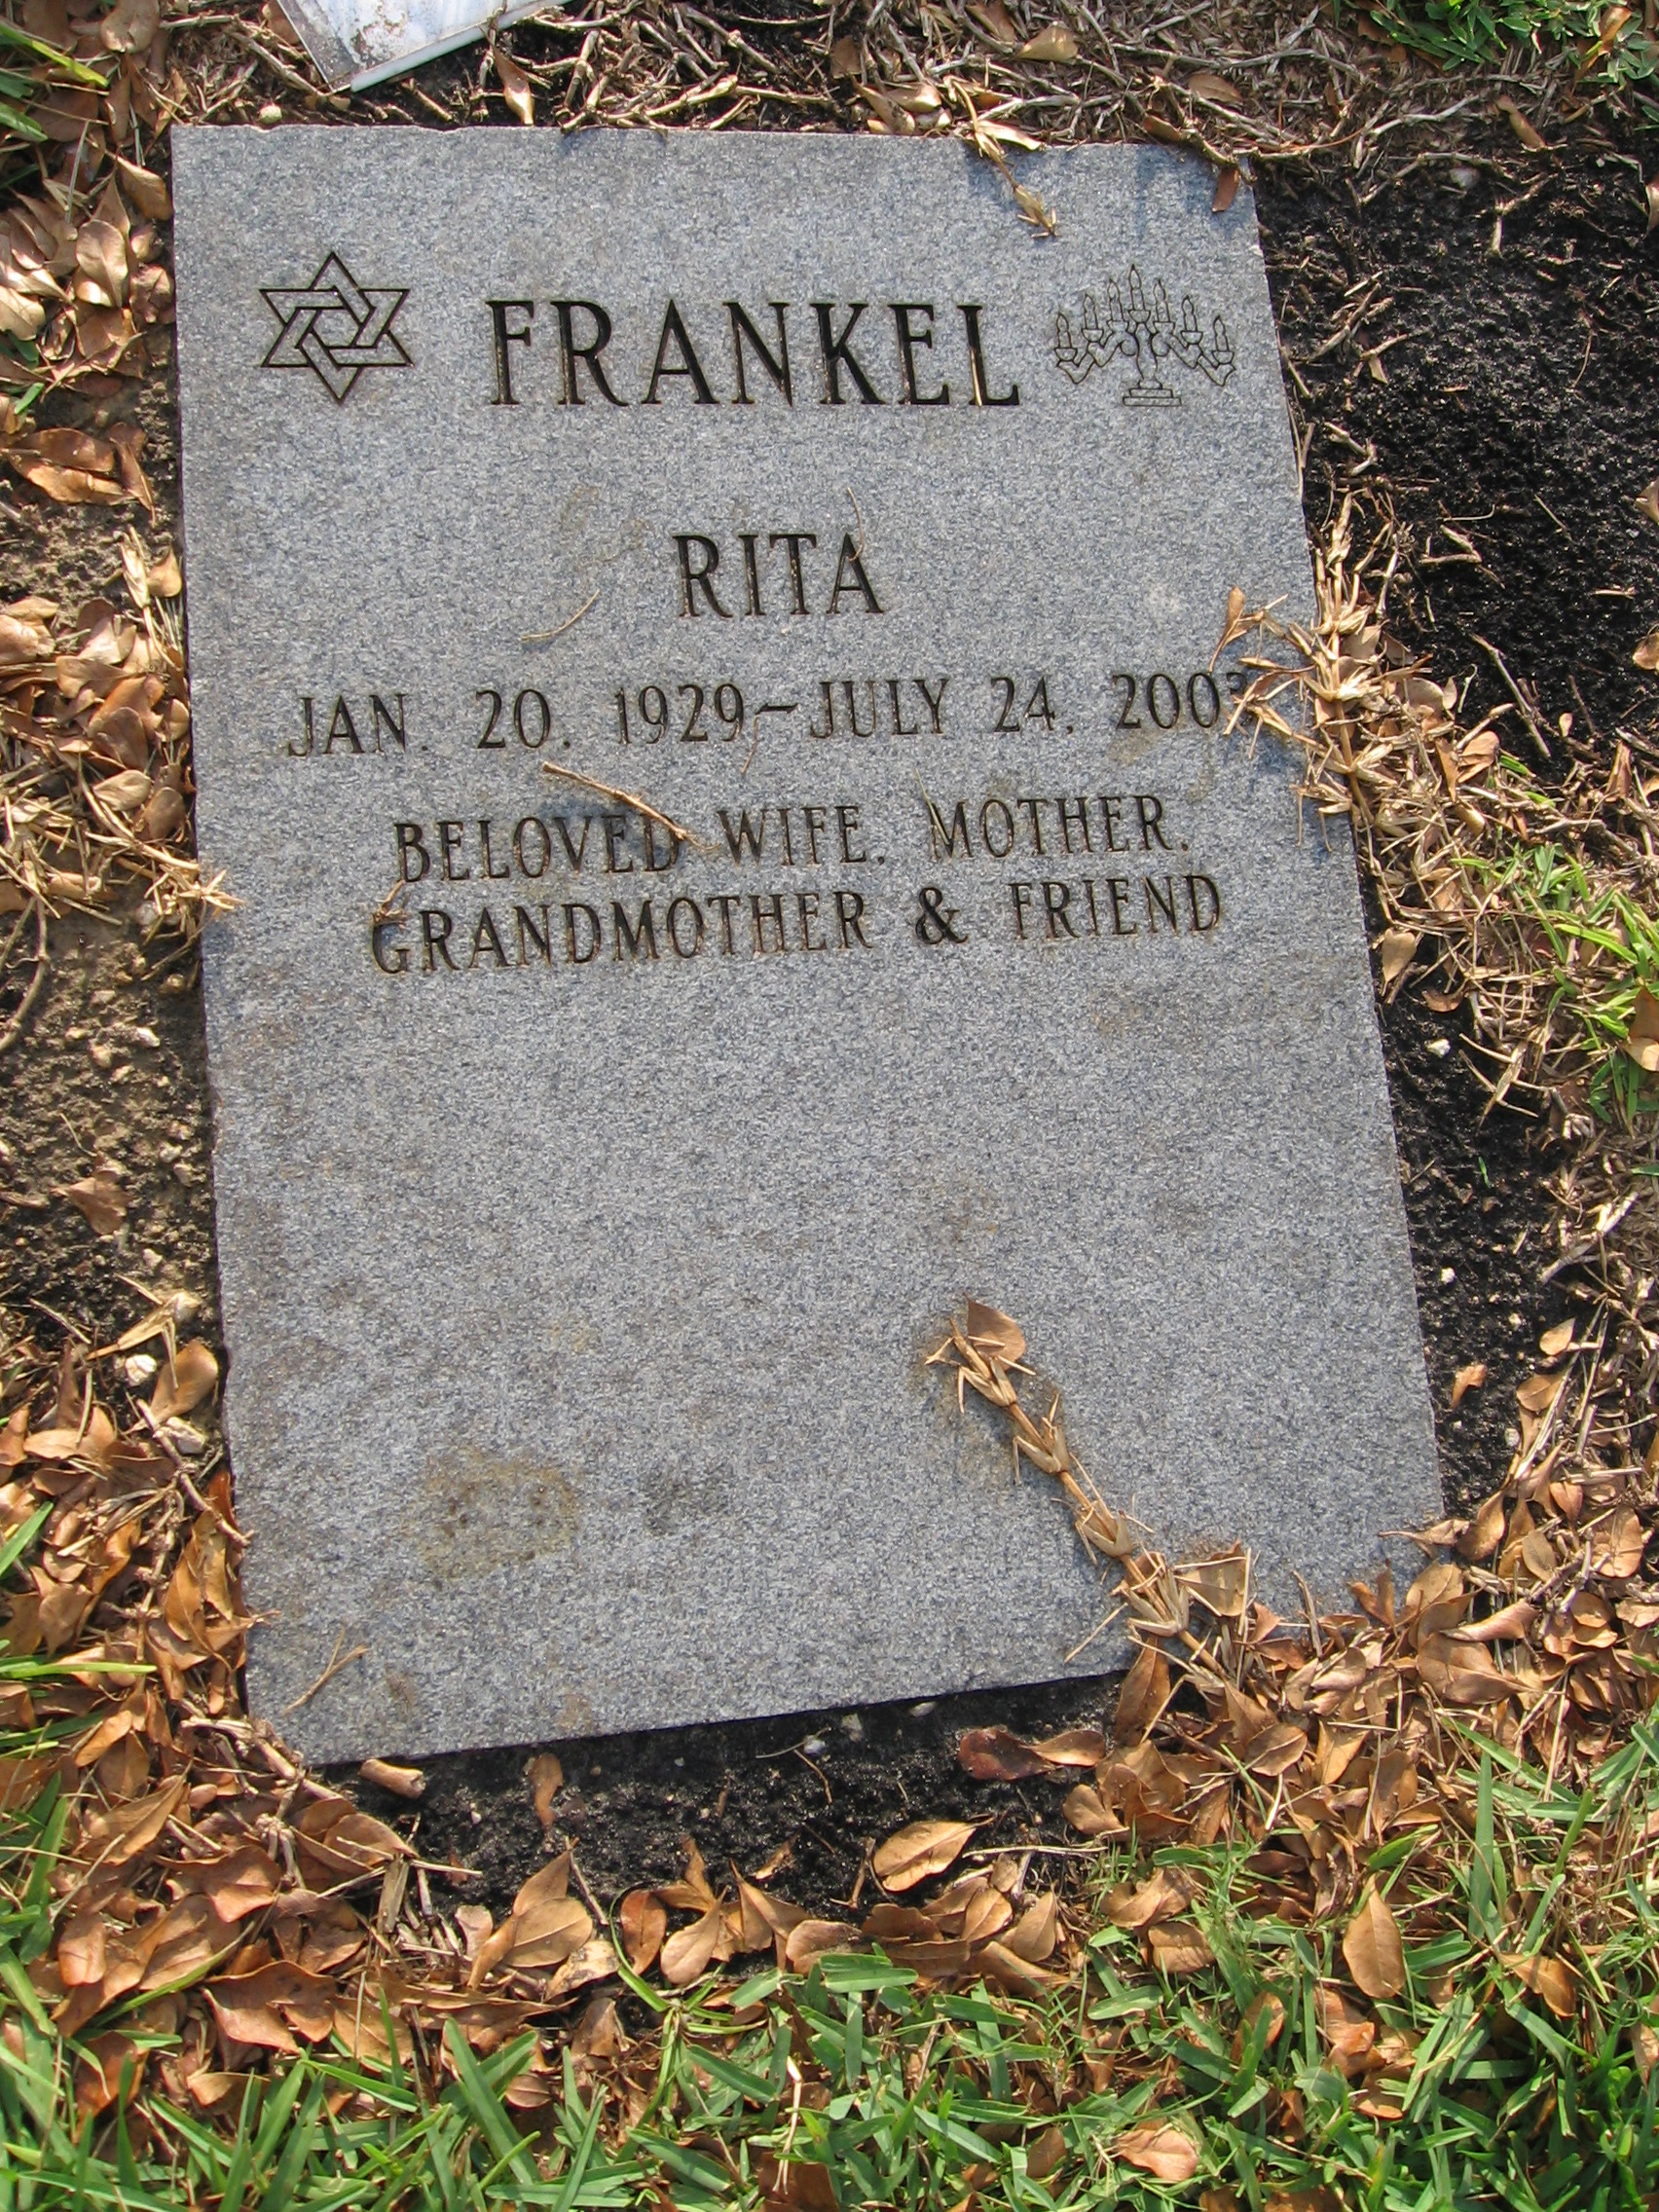 Rita Frankel